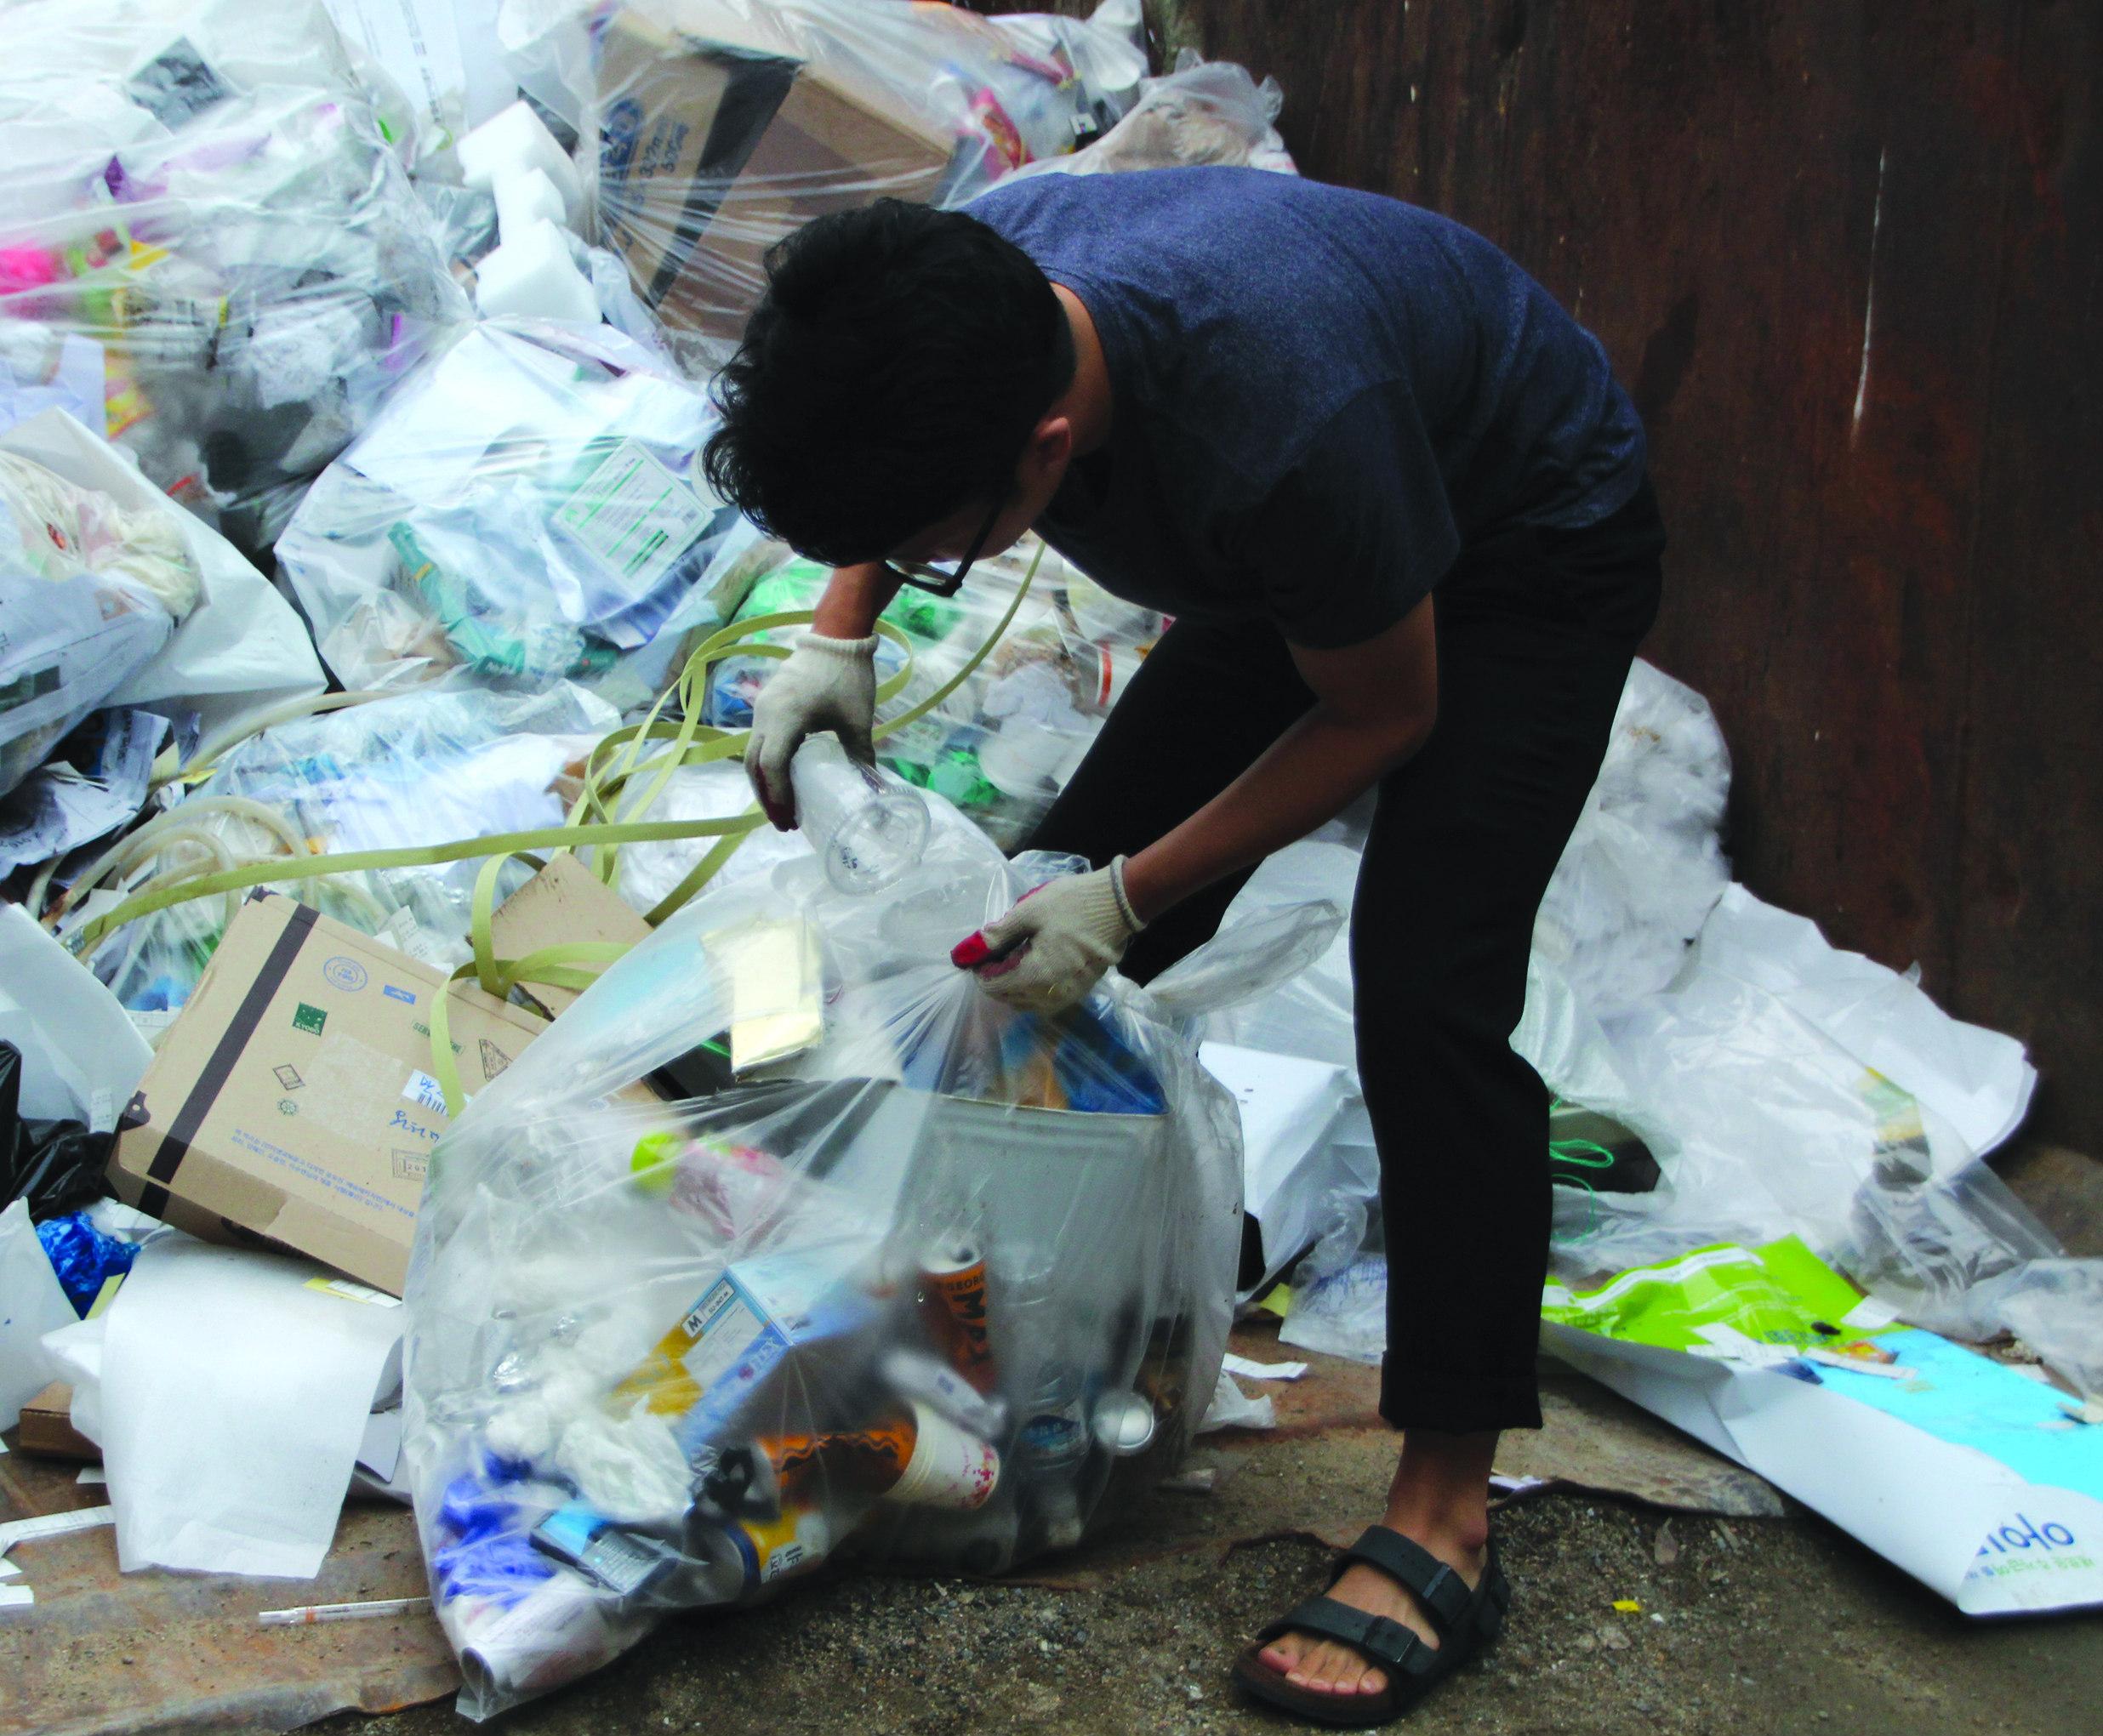 기자가 일반쓰레기로 분류되어 있는 봉투에서 재활용 가능한 쓰레기를 찾아내고 있다.대부분의 봉투에서 재활용 가능한 쓰레기들이 다수 발견됐다.